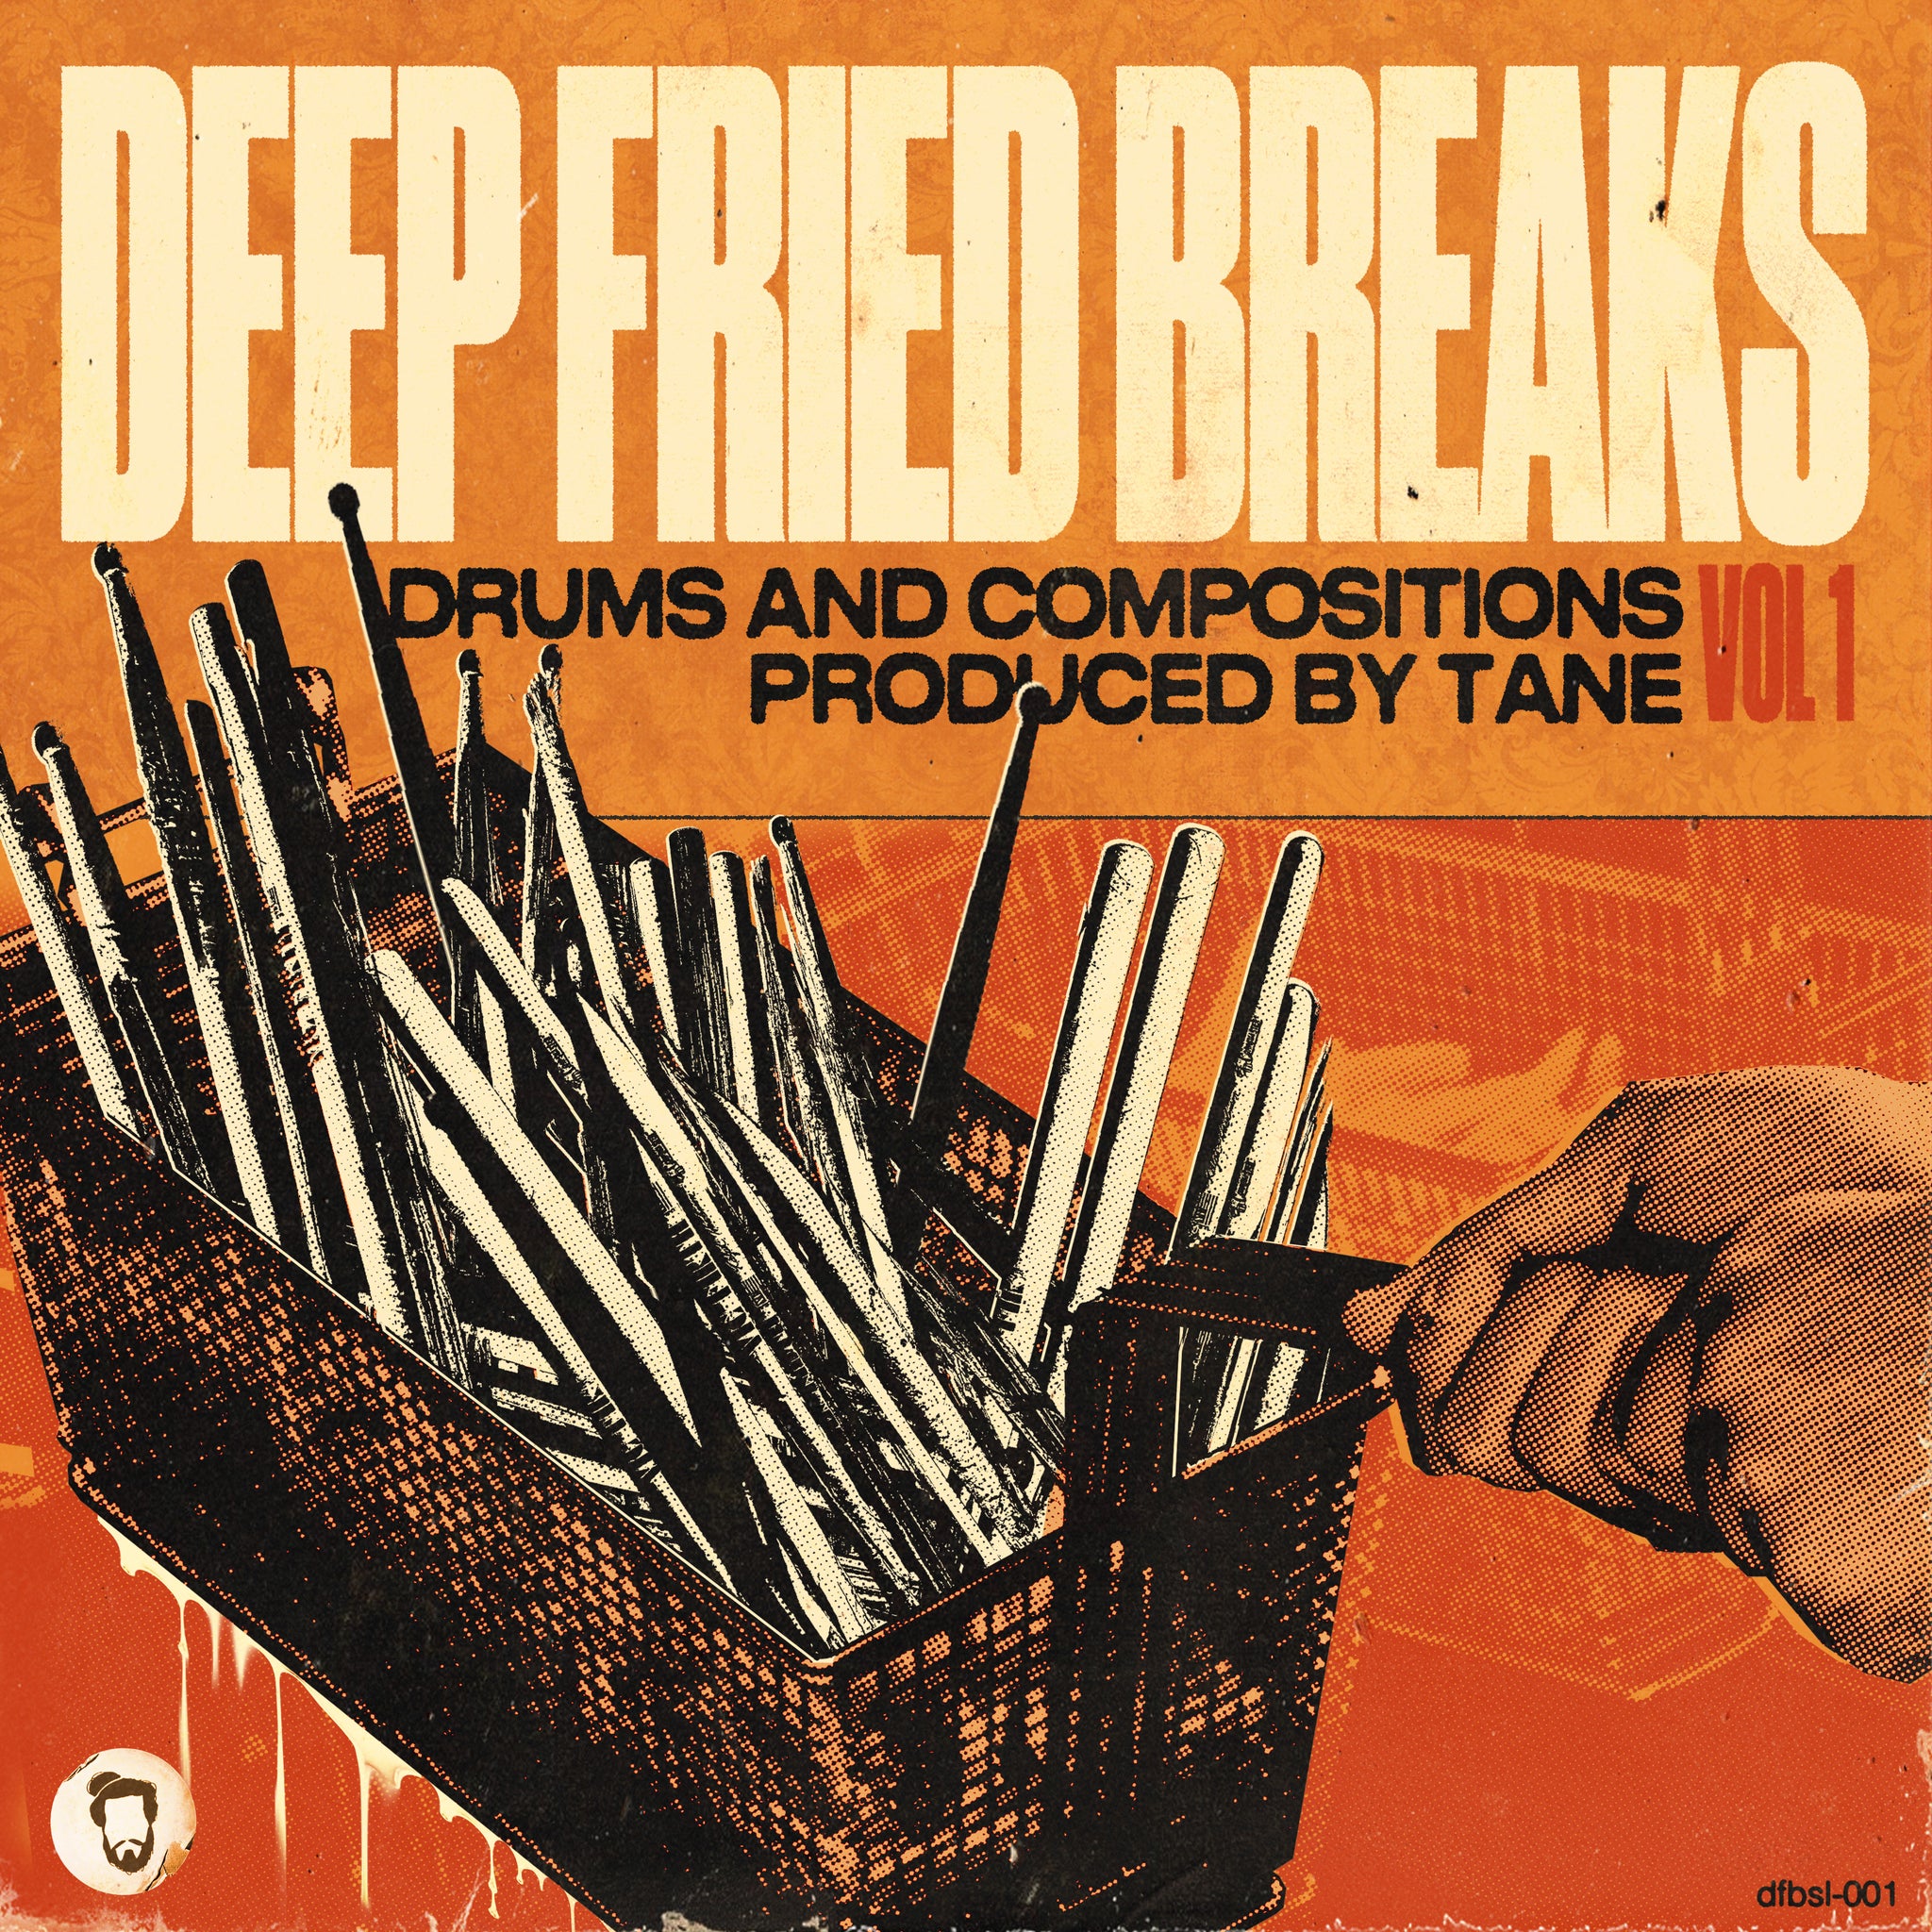 Deep Fried Breaks